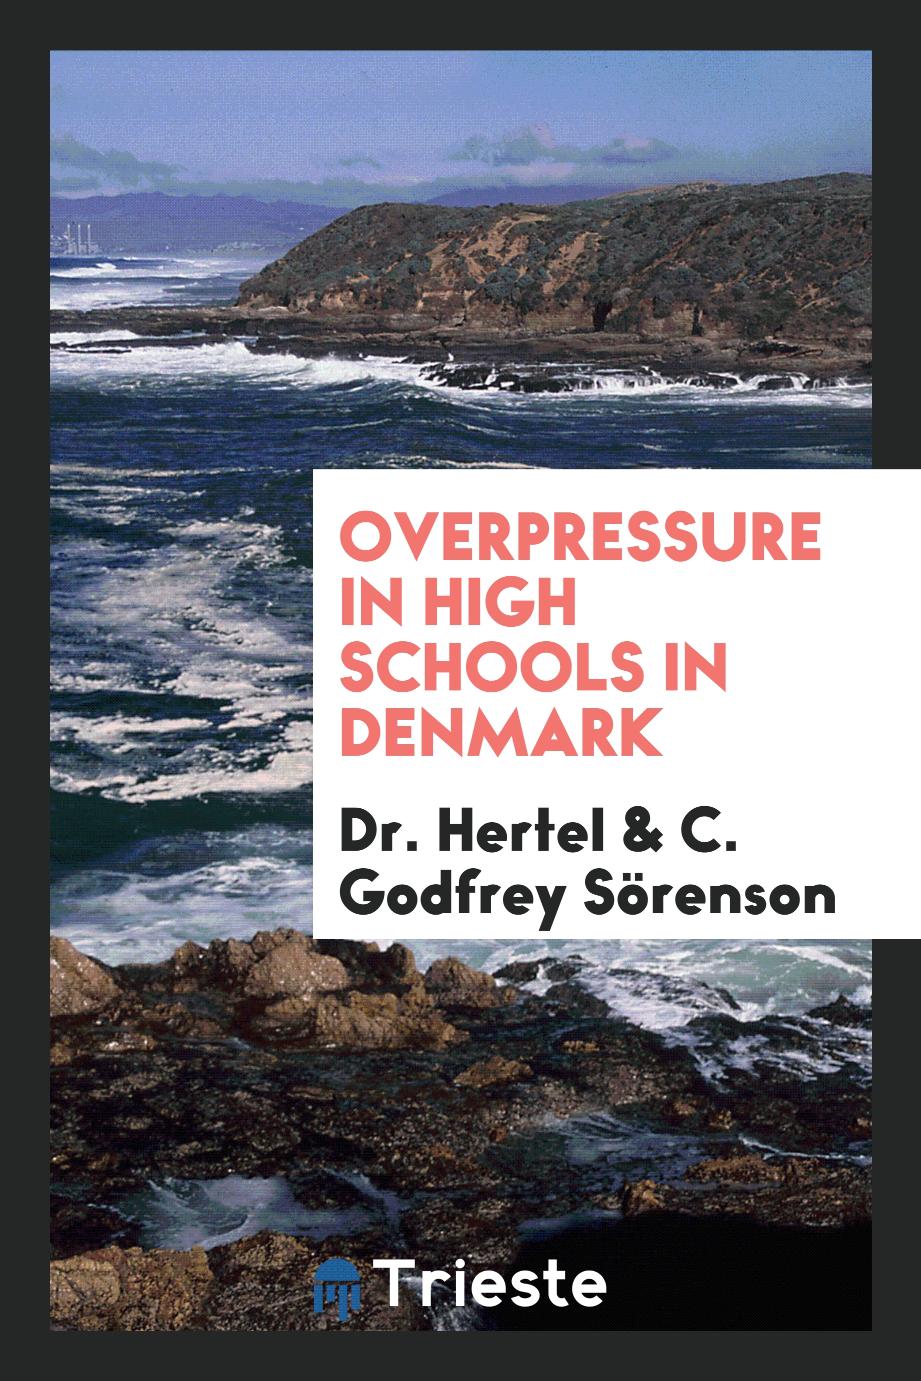 Overpressure in high schools in Denmark